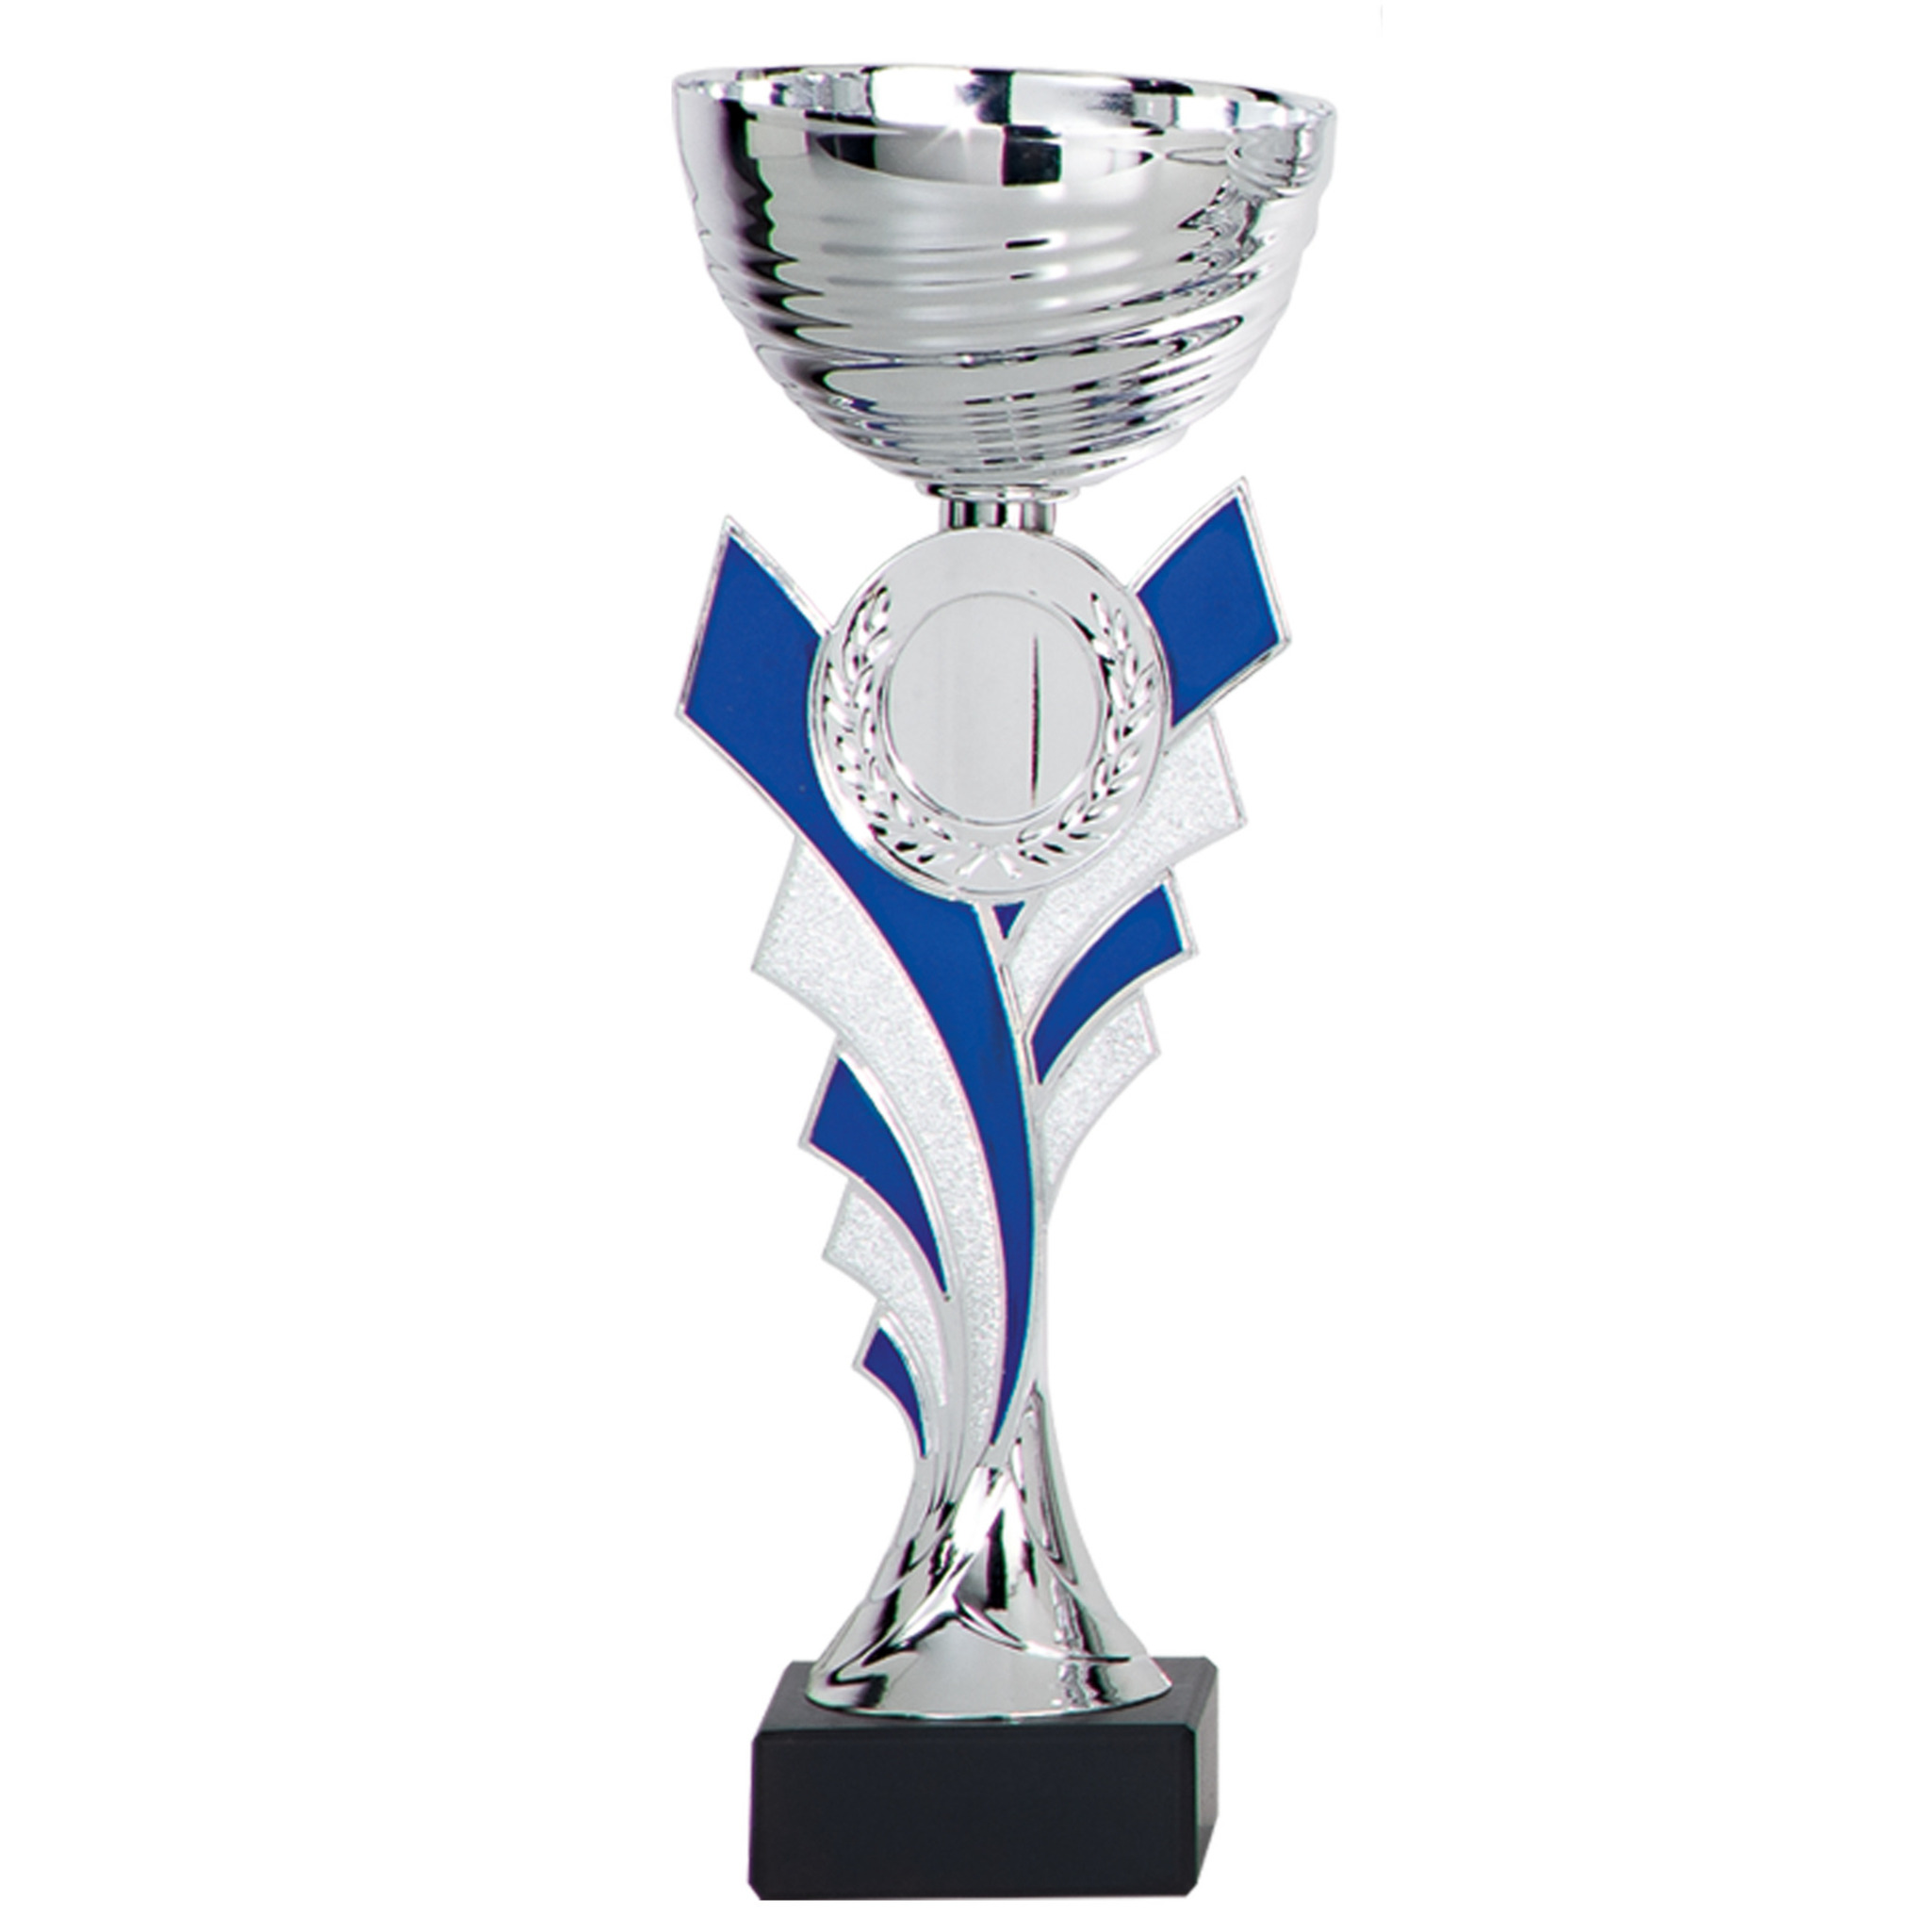 Luxe trofee-prijs beker zilver-blauw kunststof 20 x 8 cm